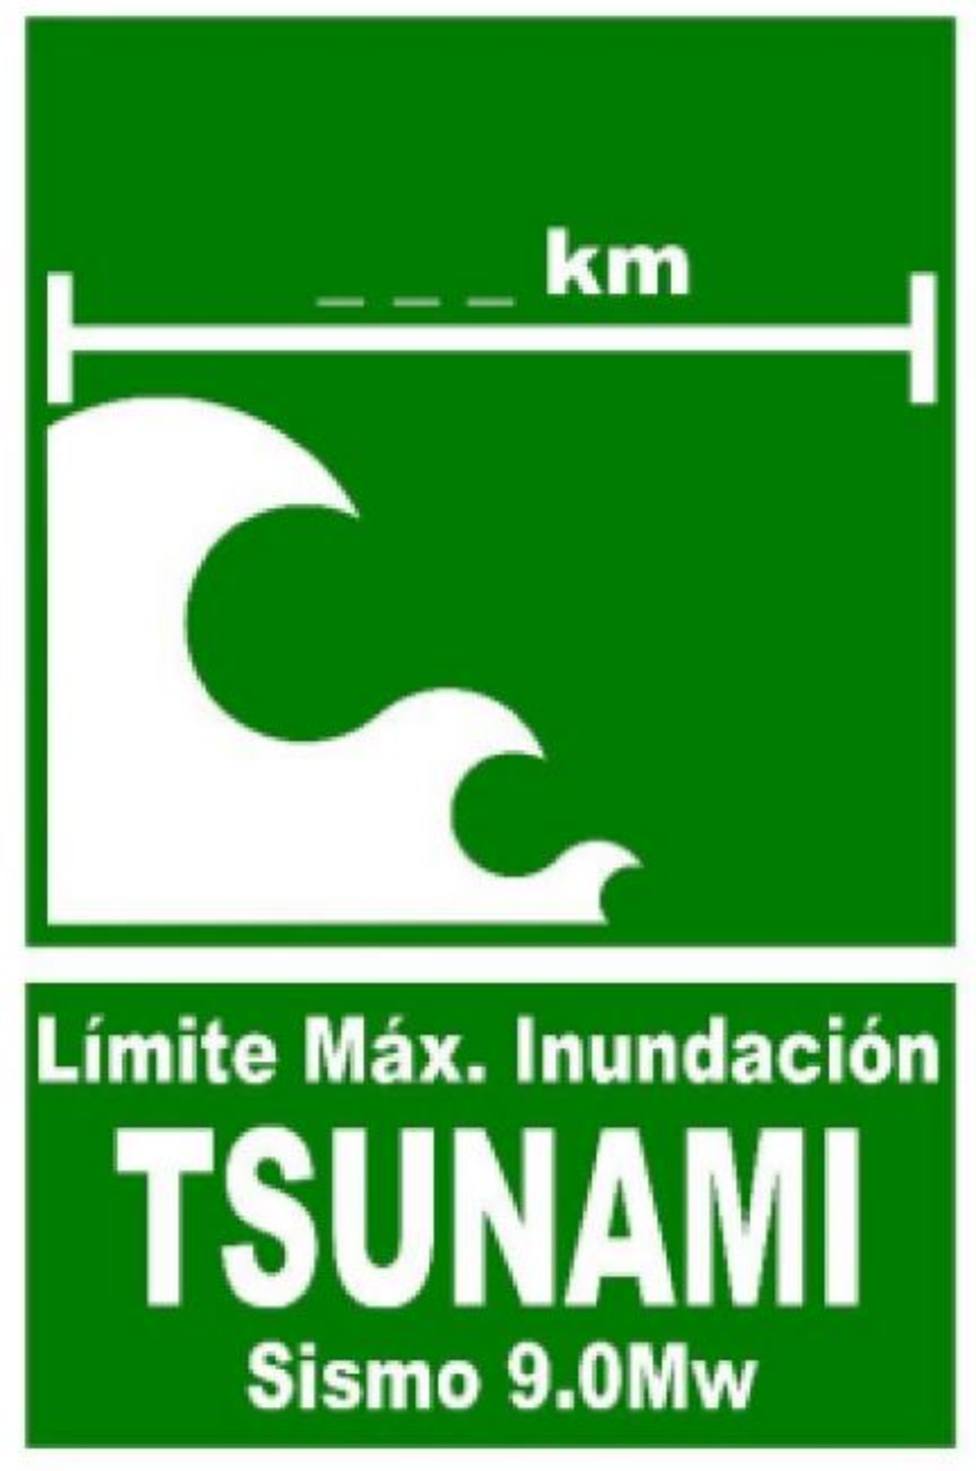 ctv-3no-tsunami-14